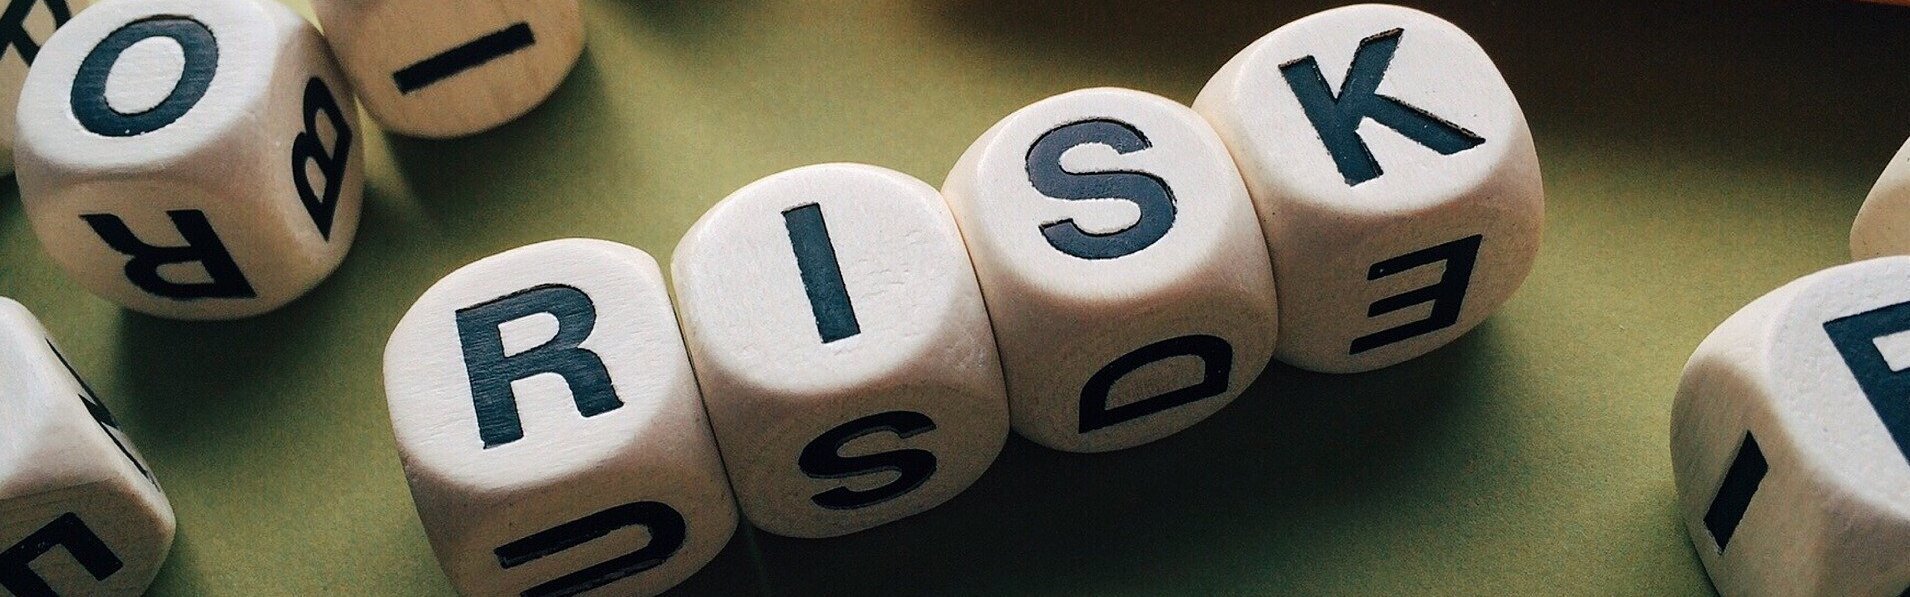 Das Bild zeigt Würfel mit Buchstaben darauf, die das englische Wort "Risk" ergeben.